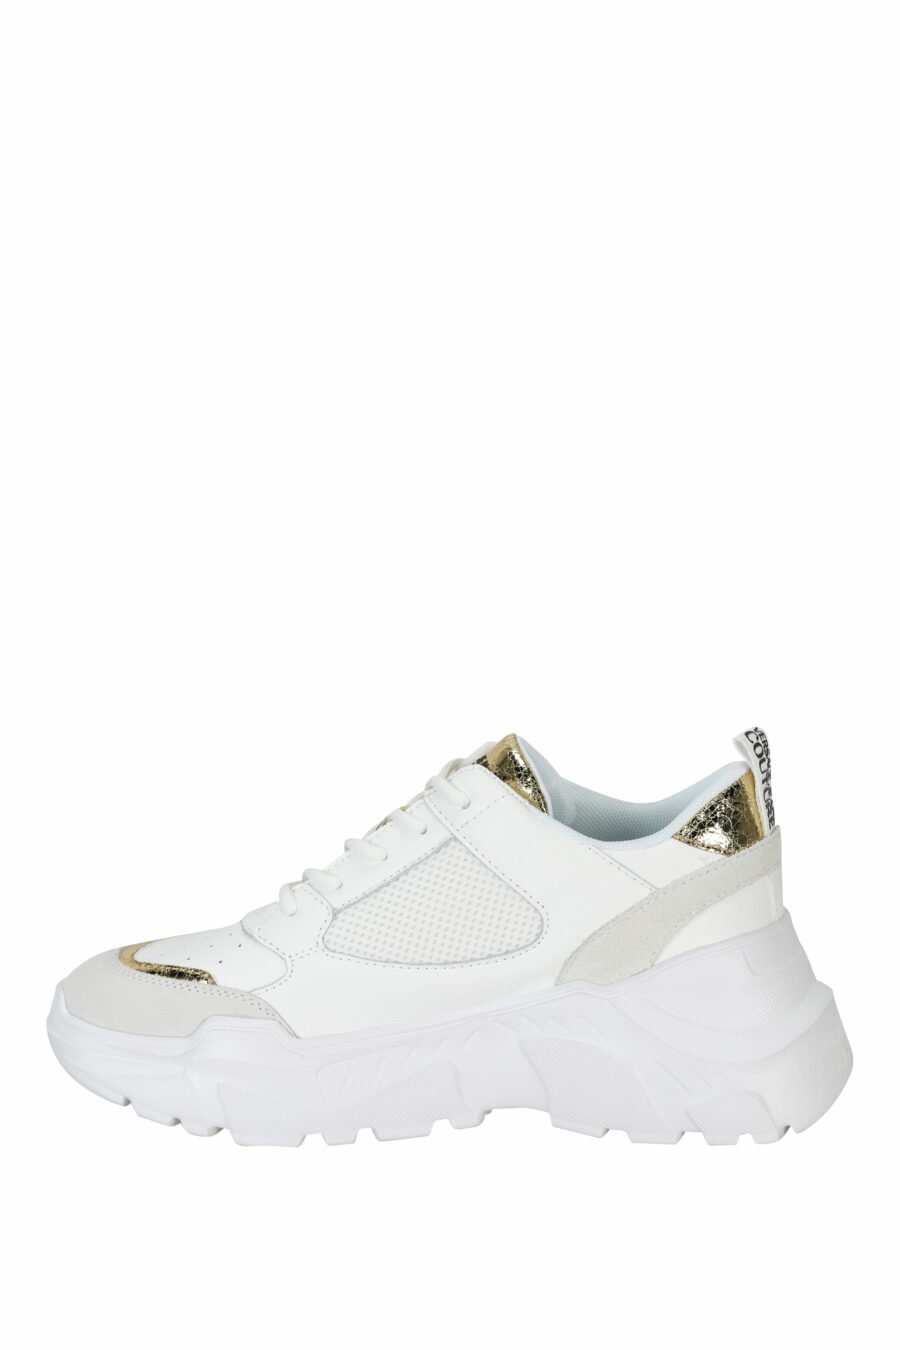 Zapatillas blancas mix con detalles dorados y plataforma - 8052019604764 2